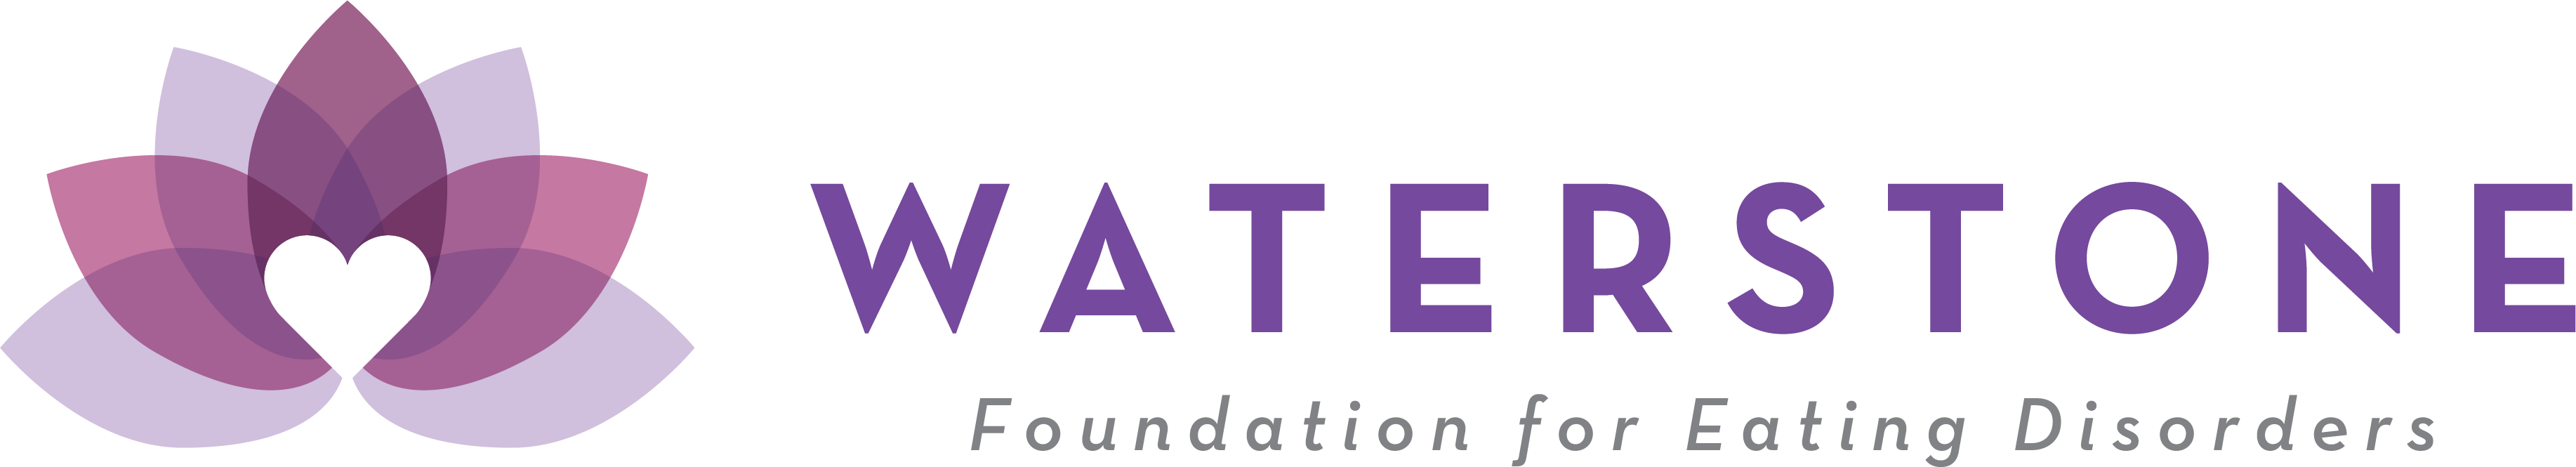 Waterstone Foundation